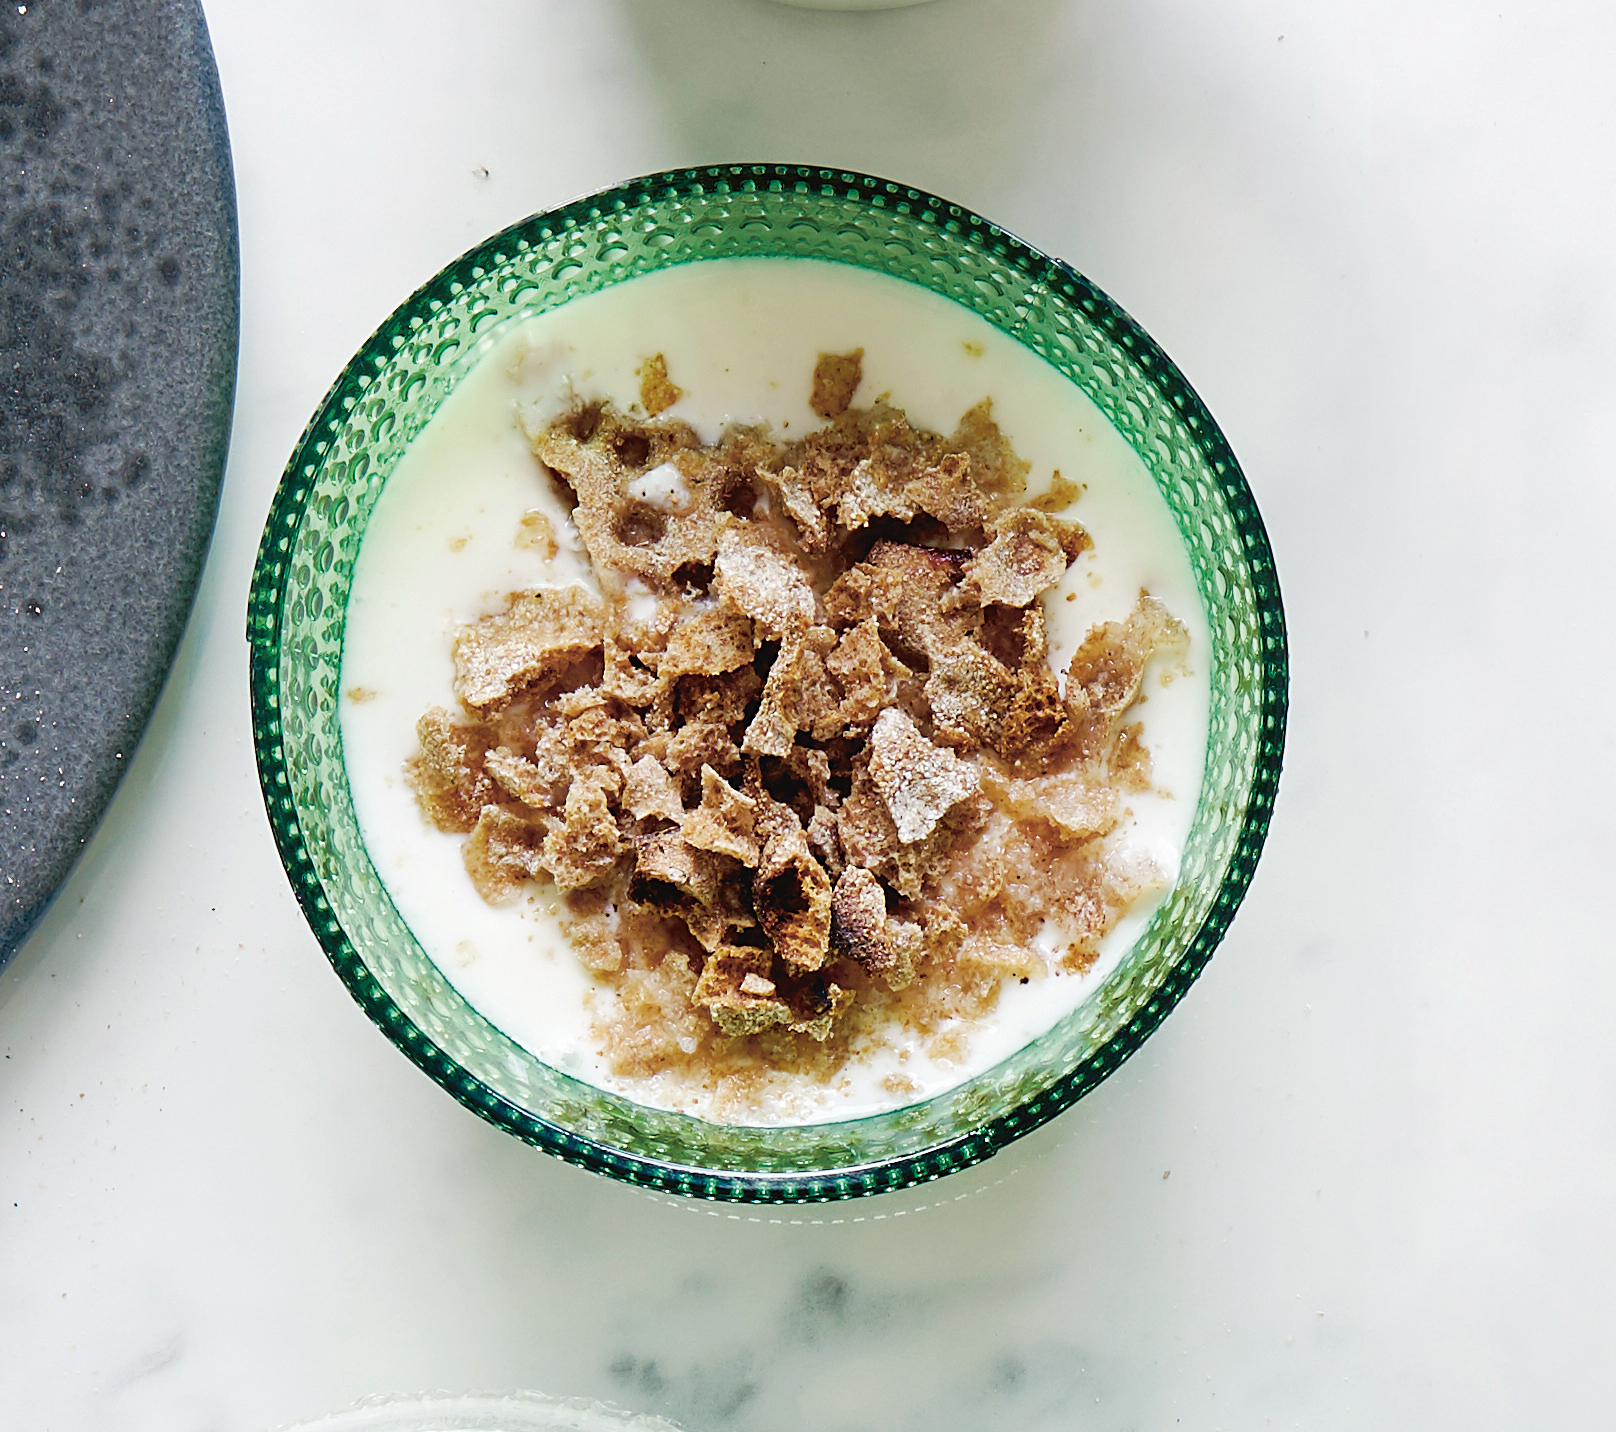 Filmjölk, with flatbread sprinkles, as featured in Breakfast: The Cookbook